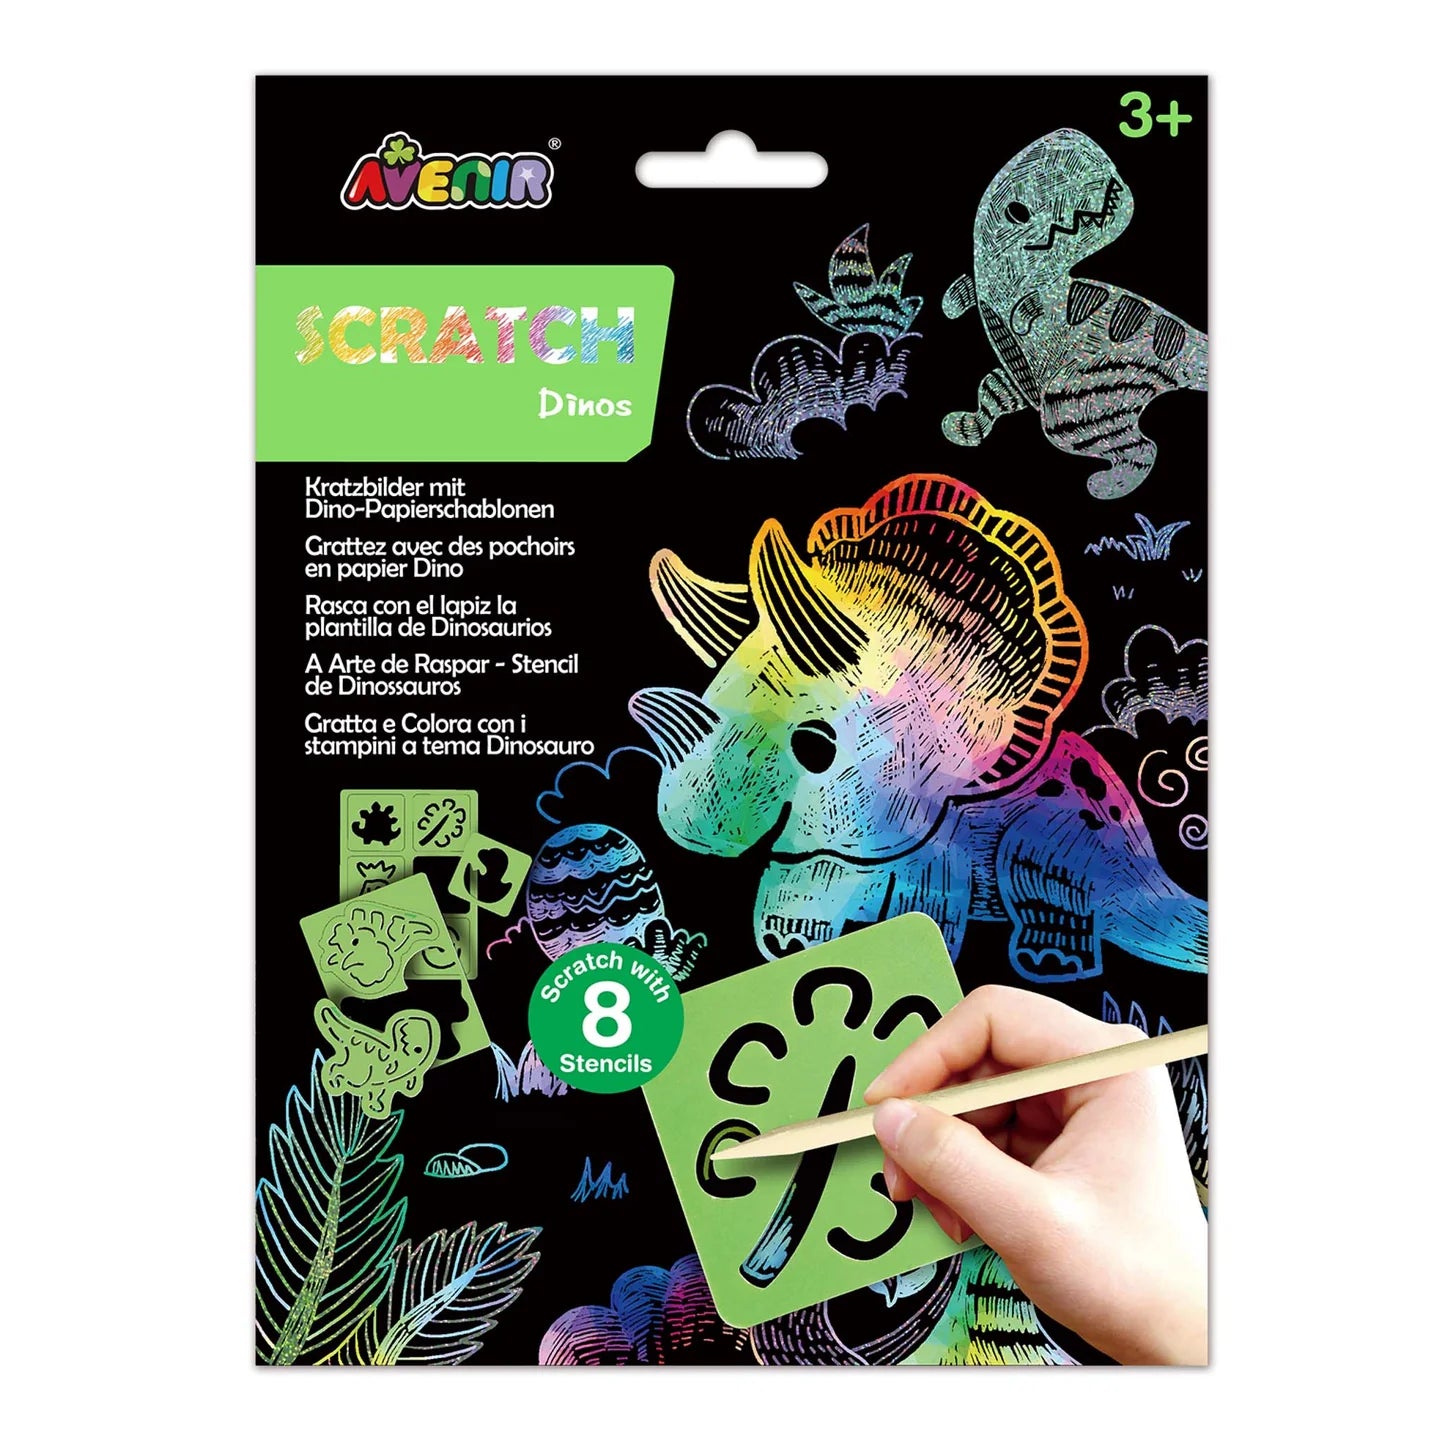 Scratch Dinos with Stencil (8013752828103)